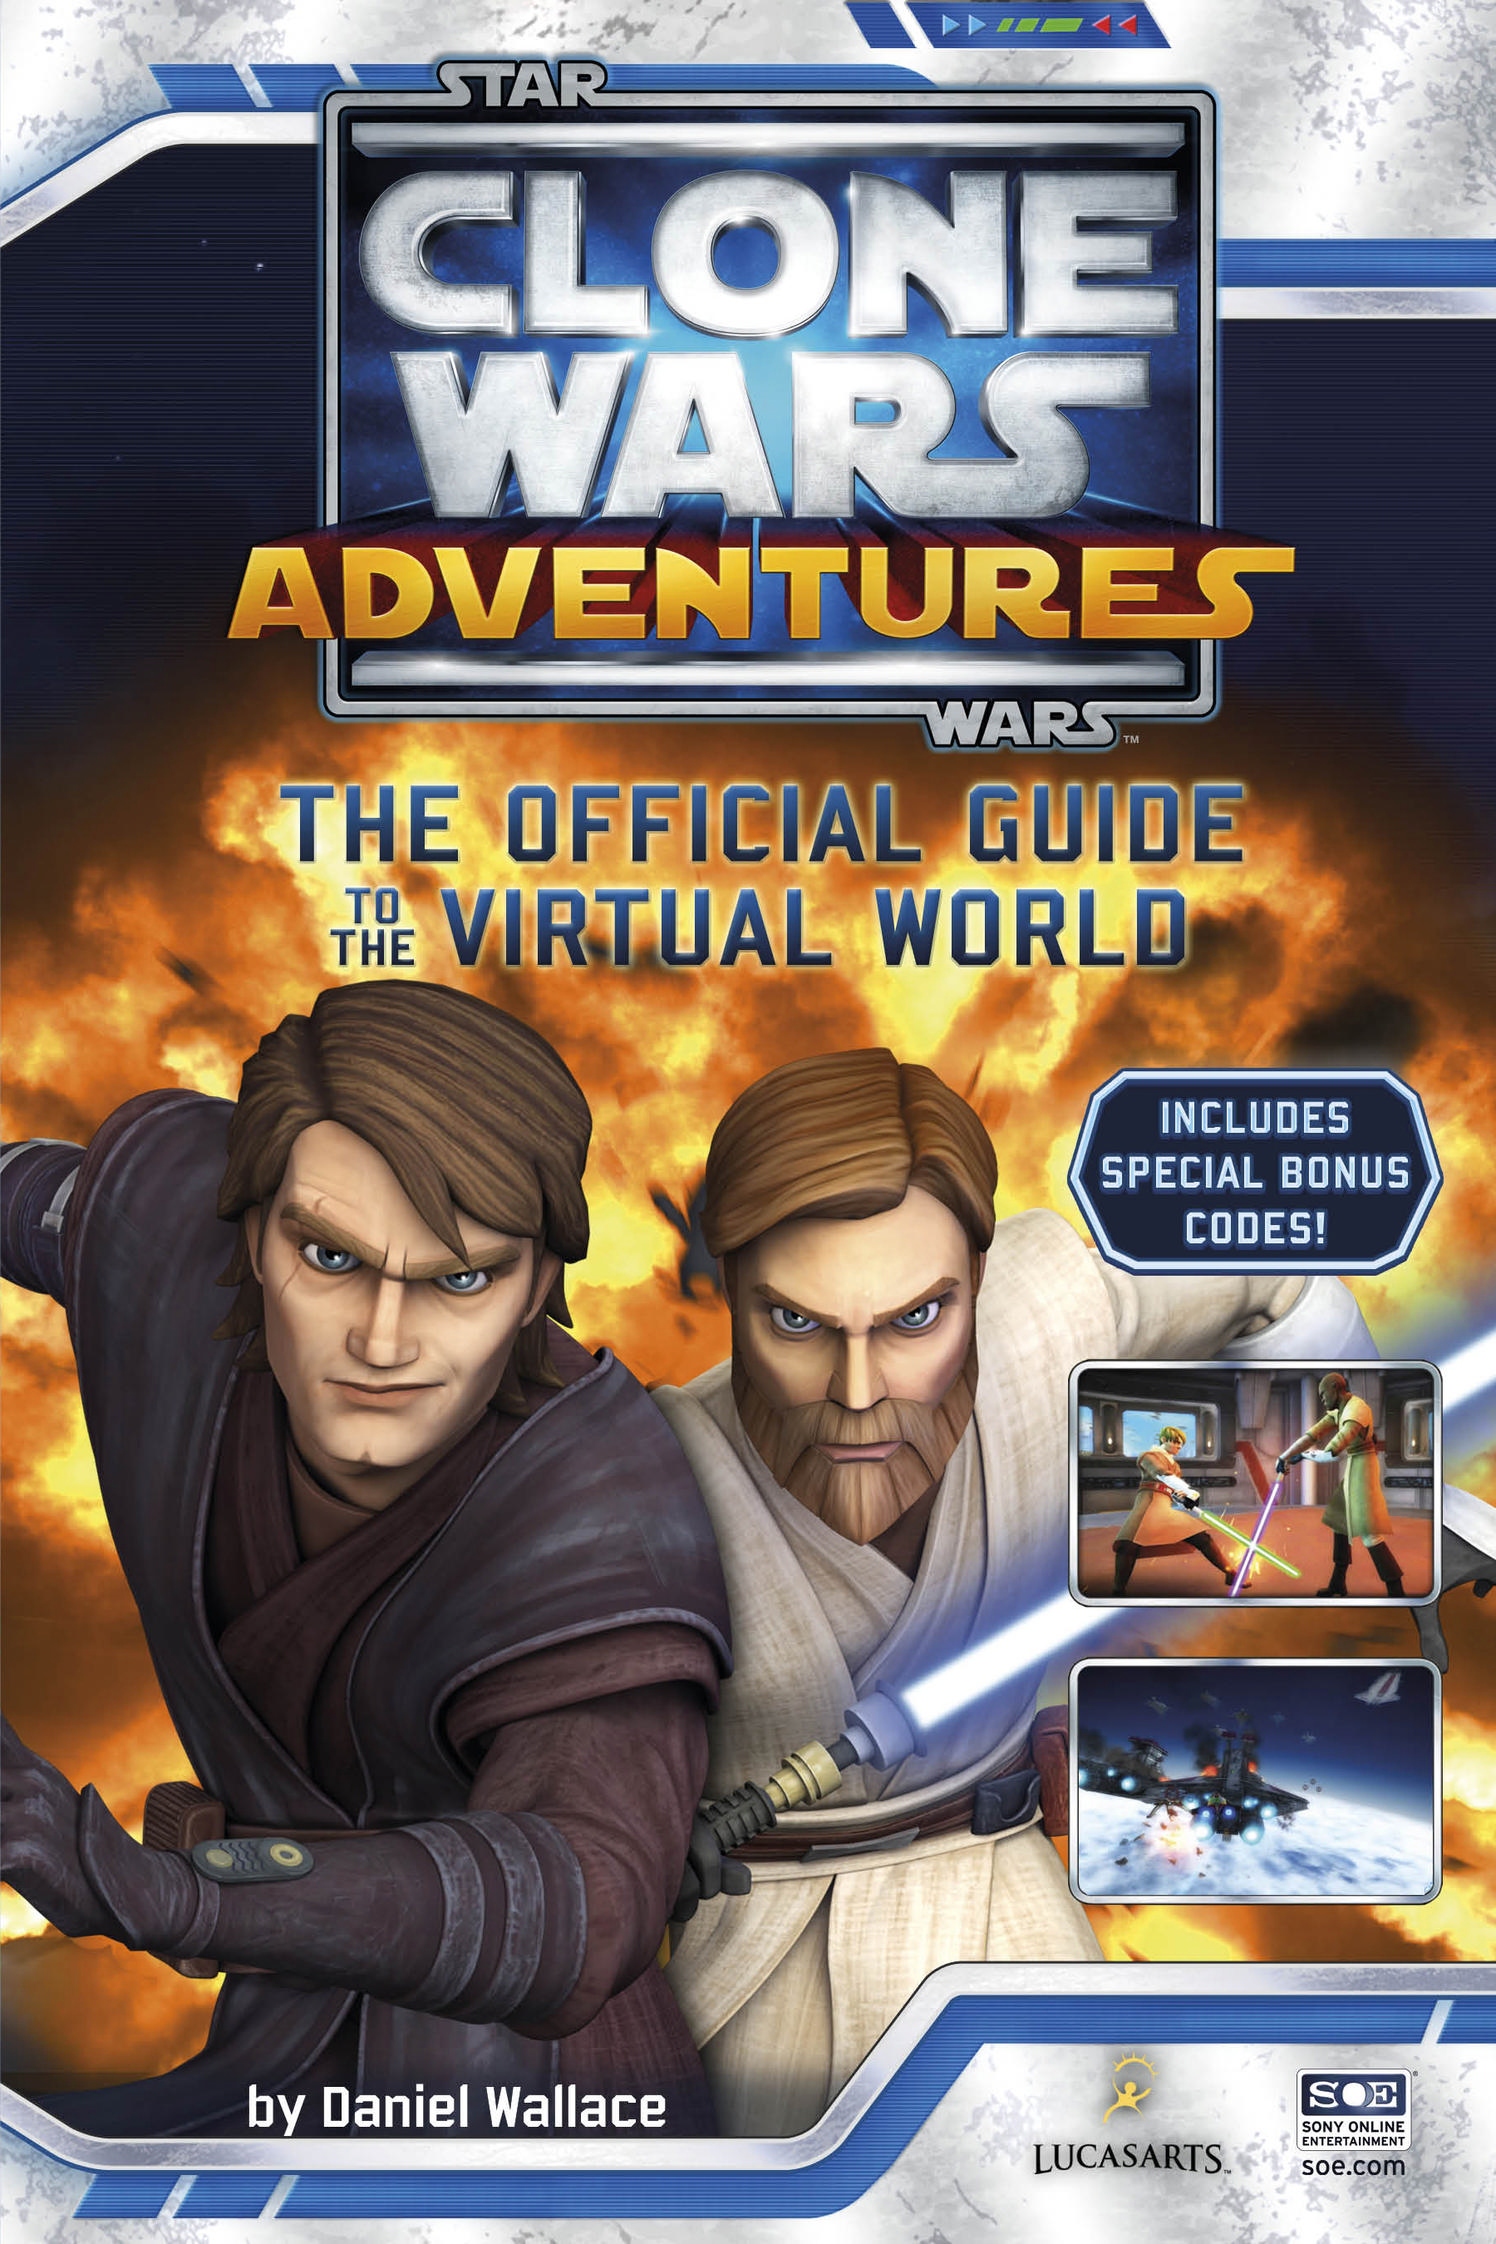 Клон страницы. Star Wars: Clone Wars Adventures. Звездные войны персонажи Дэниел Уоллес. Книга клон. Дэниел Уоллес «Звездные войны .полная история».